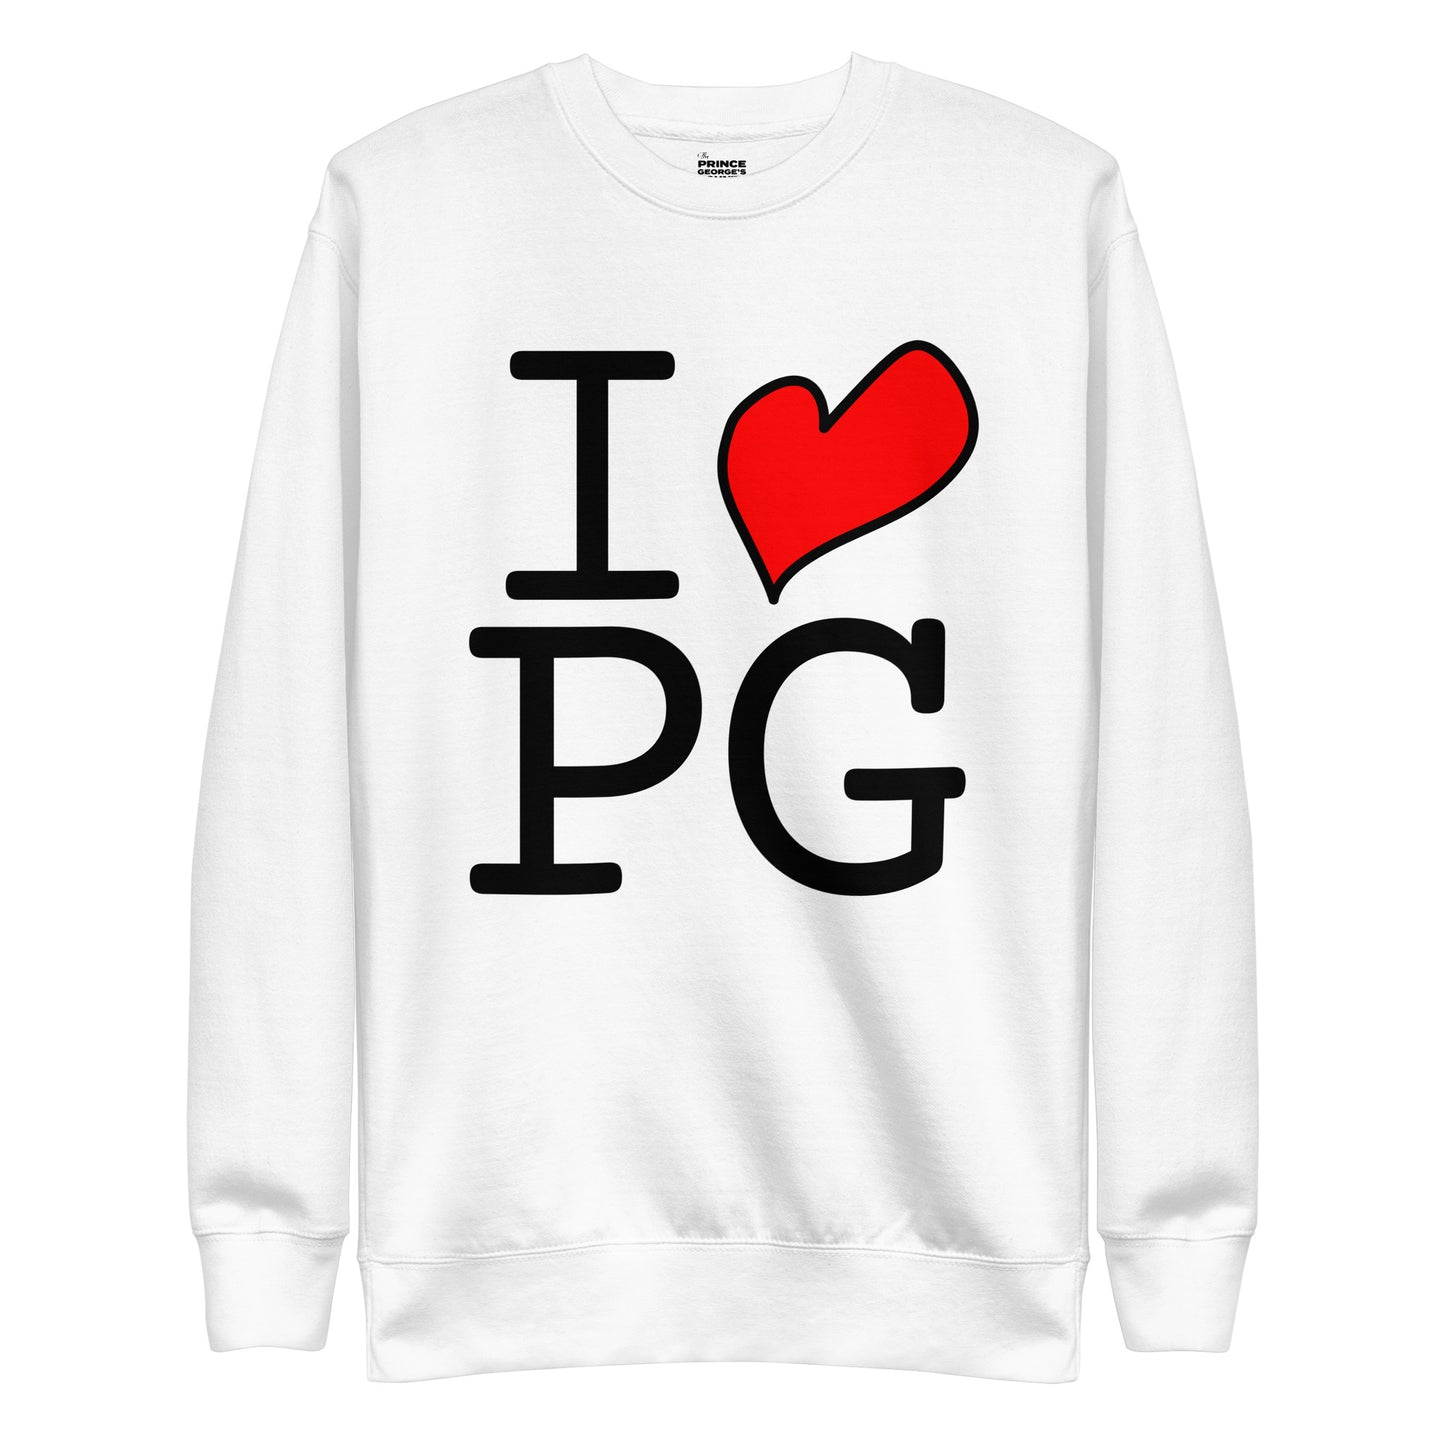 I LOVE PG Unisex Premium Sweatshirt